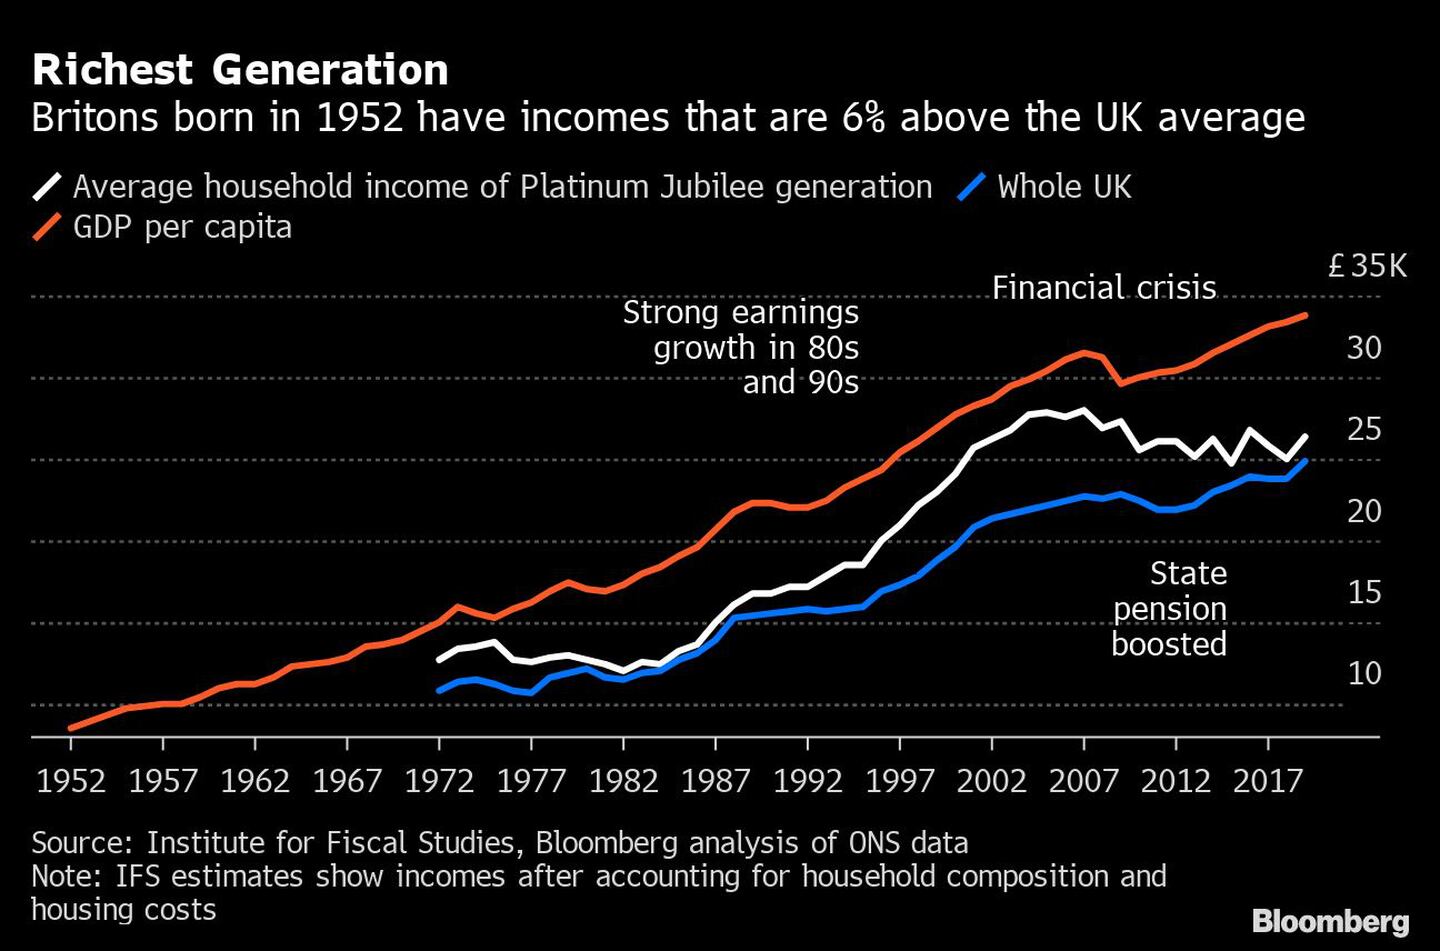 La generación más rica
Los británicos nacidos en 1952 tienen unos ingresos un 6% superiores a la media del Reino Unido
Blanco: Ingresos medios de los hogares de la generación del jubileo de platino
Azul: Todo el Reino Unido
Rojo: PIB per cápita 
Crisis financiera
Fuerte crecimiento de los ingresos en los años 80 y 90
Aumento de la pensión estataldfd